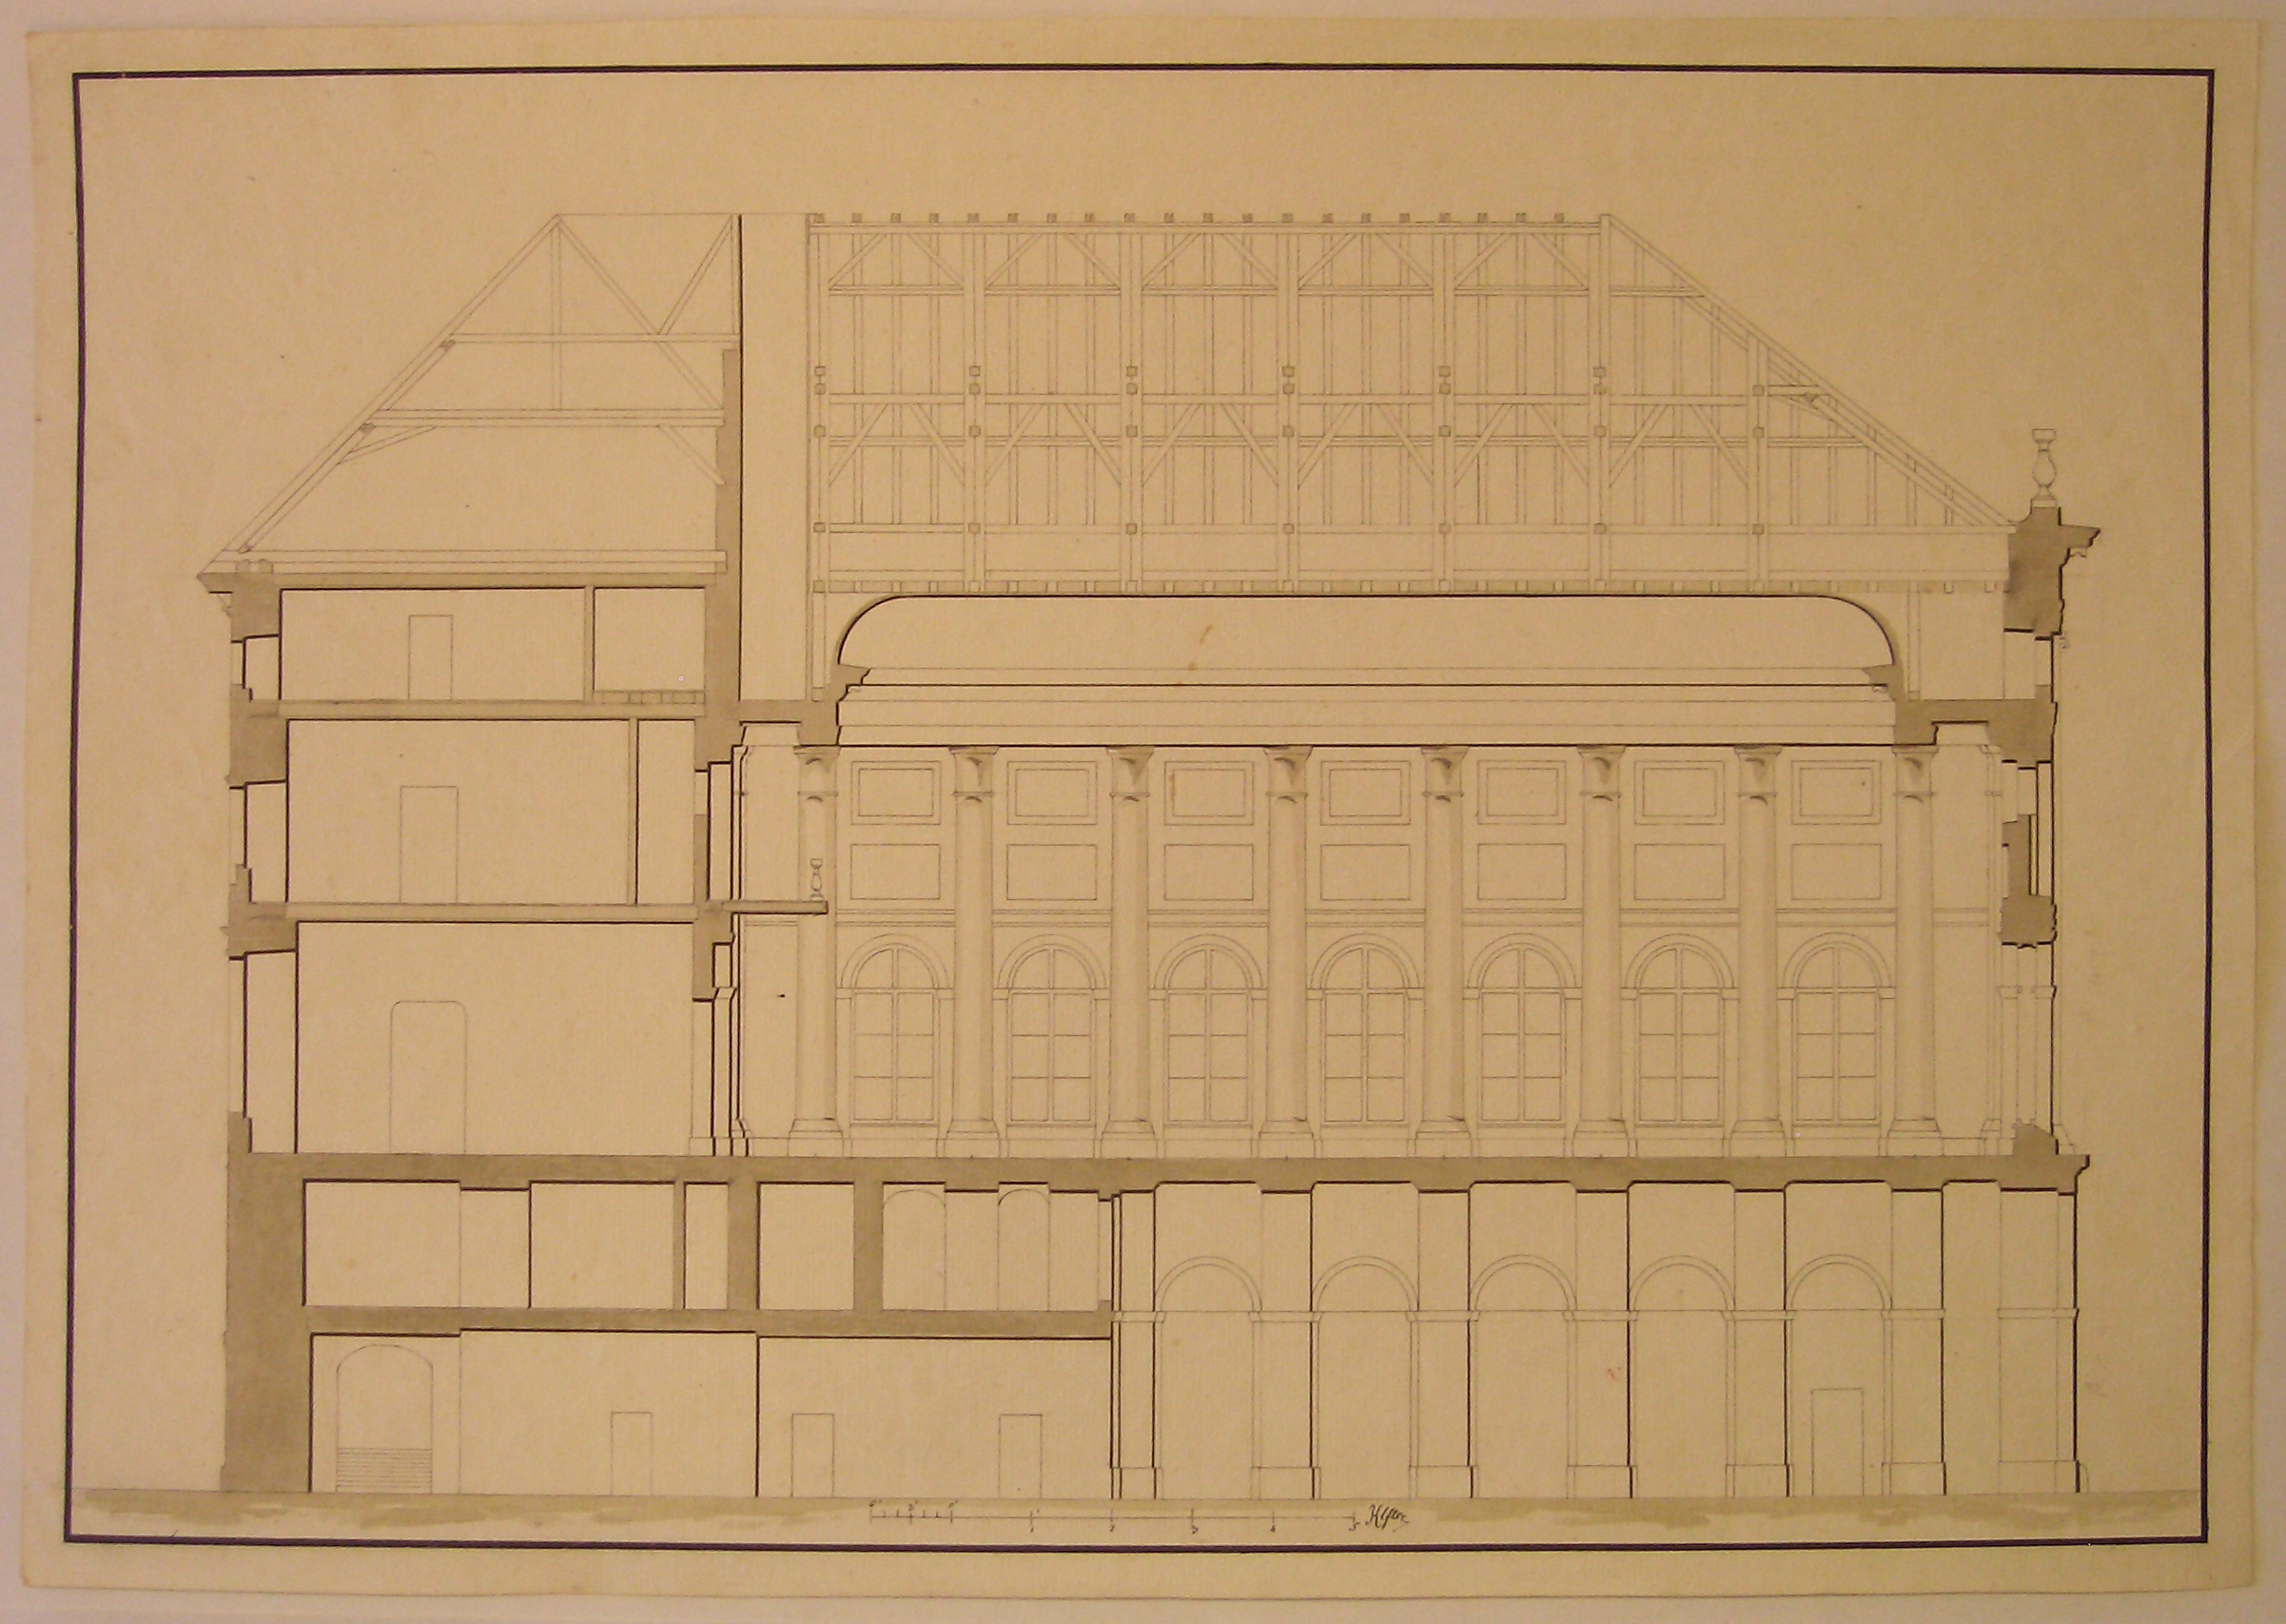 Progetto architettonico: sezione trasversale di edificio (disegno architettonico) - ambito austriaco (sec. XIX)